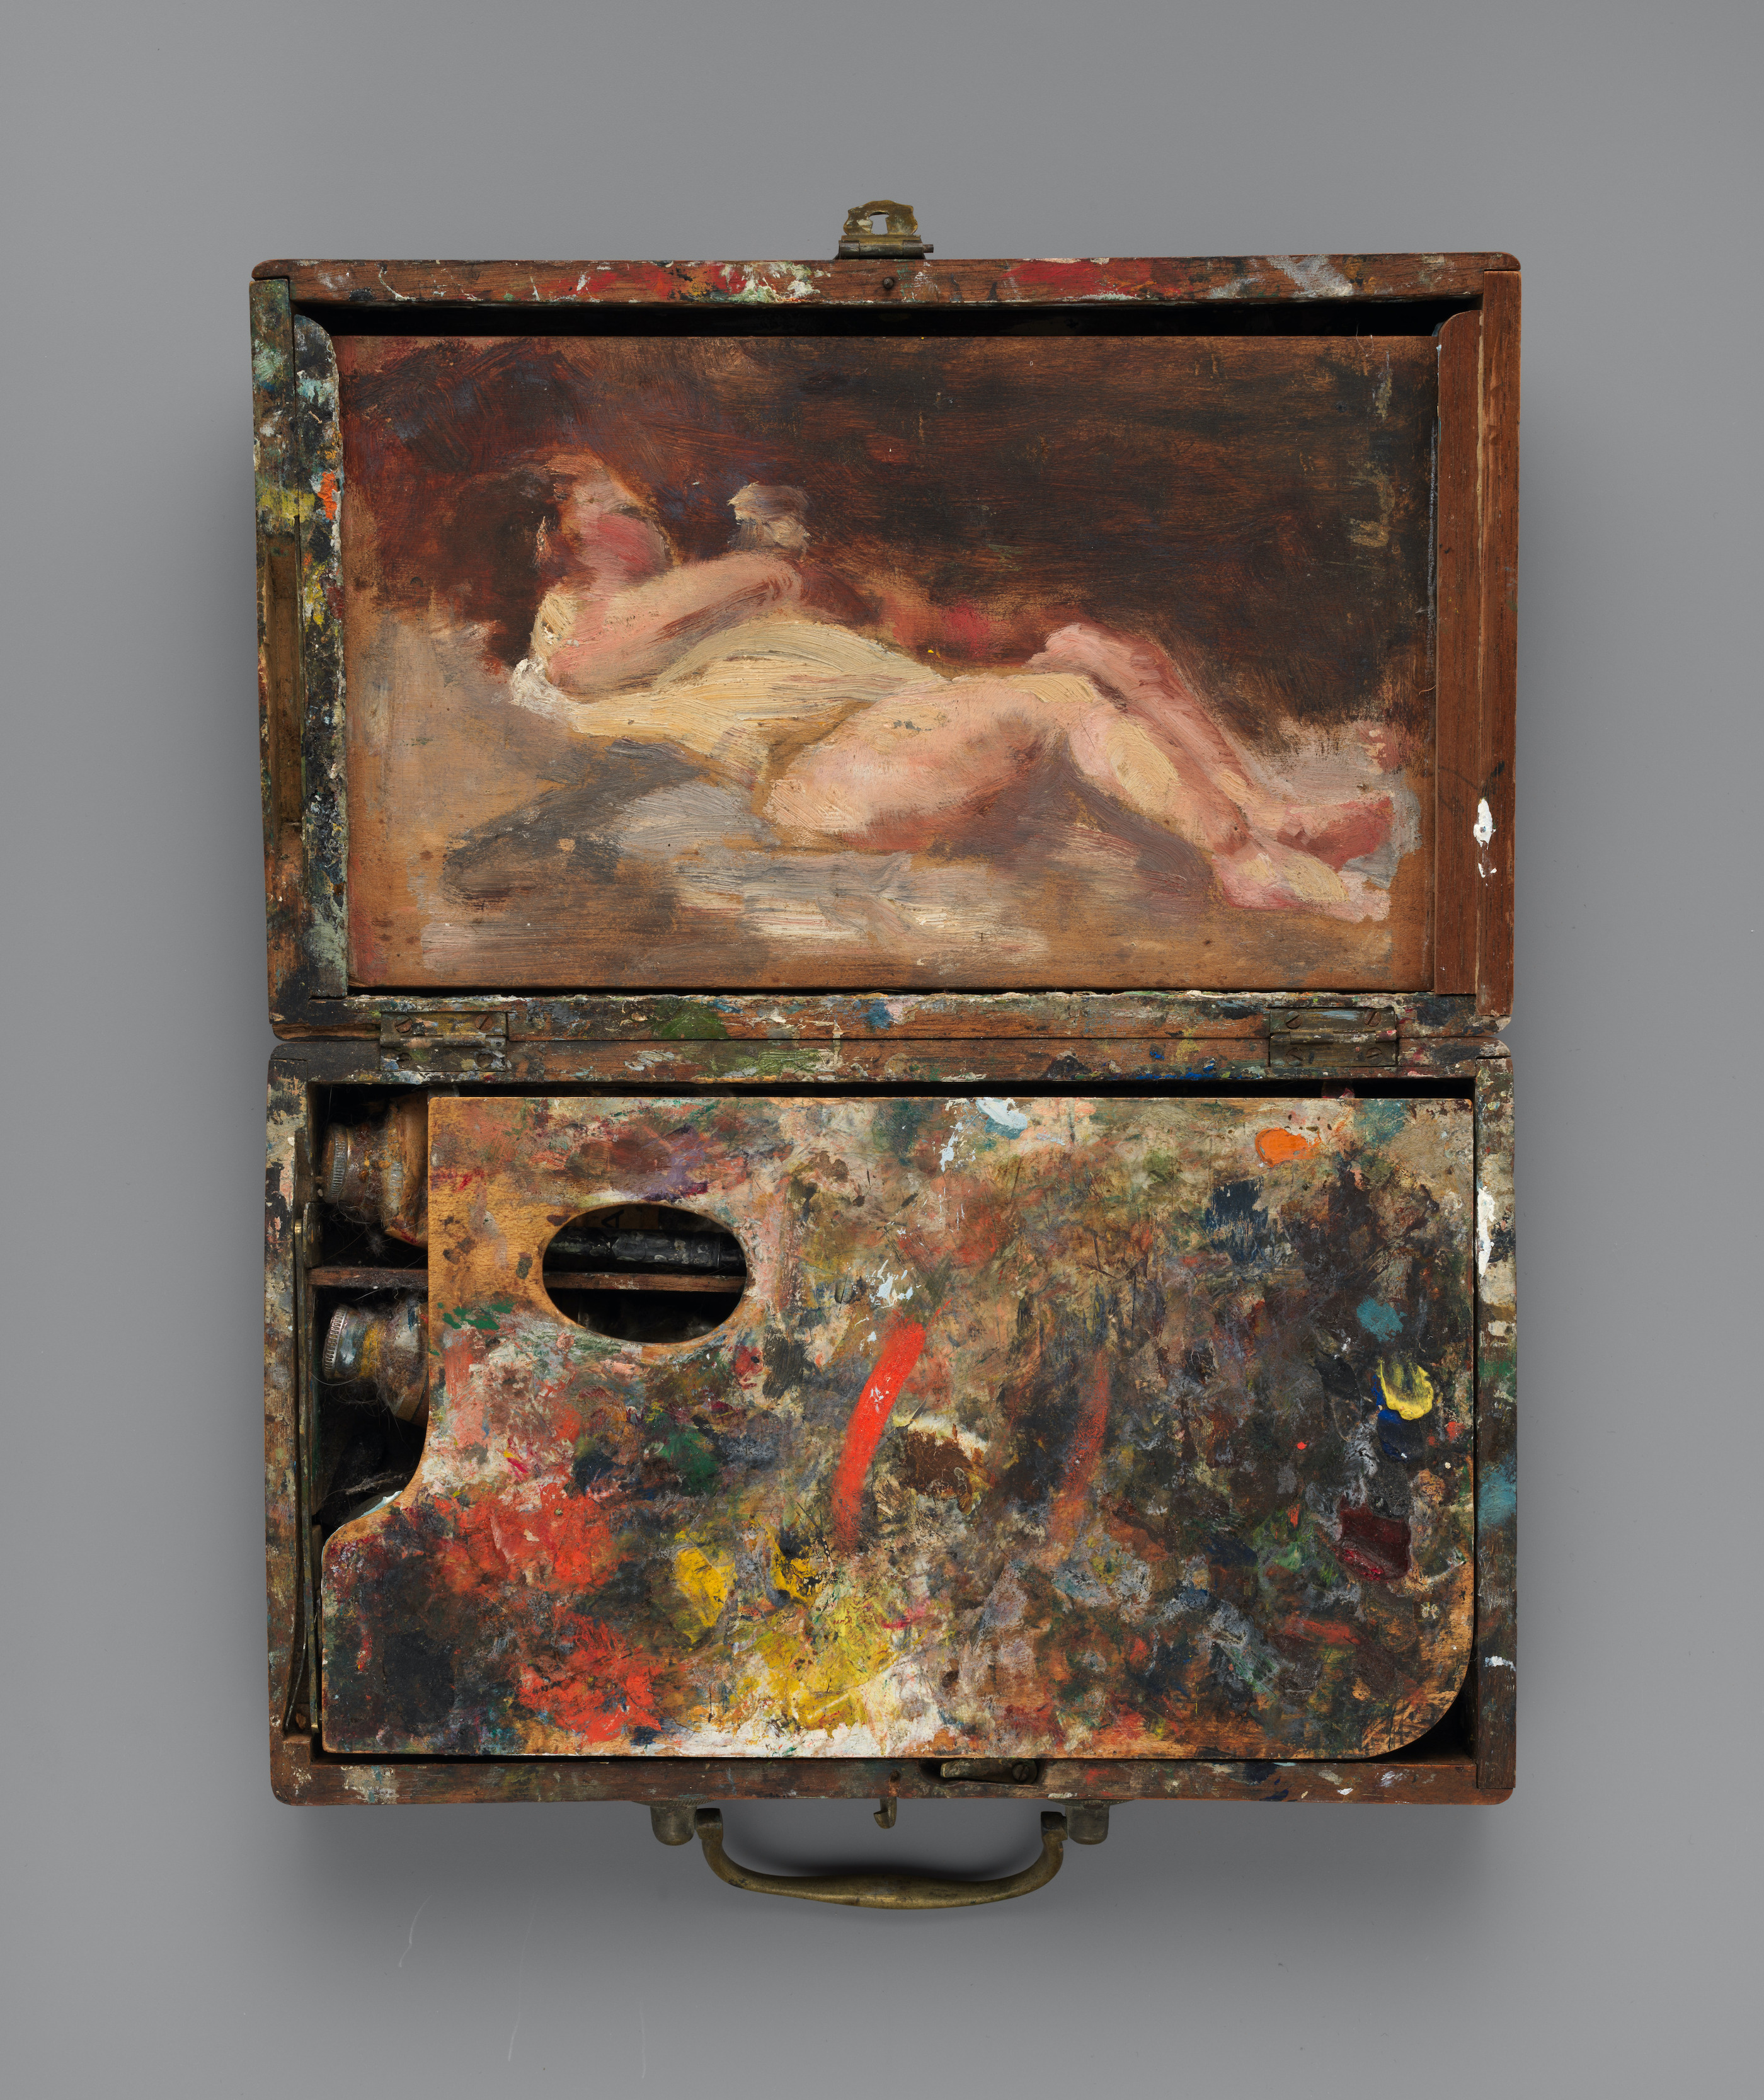 绘有裸体的画盒 by 海伦娜 德凯 - 约1871 - 5.1 × 23.5 × 14 cm 